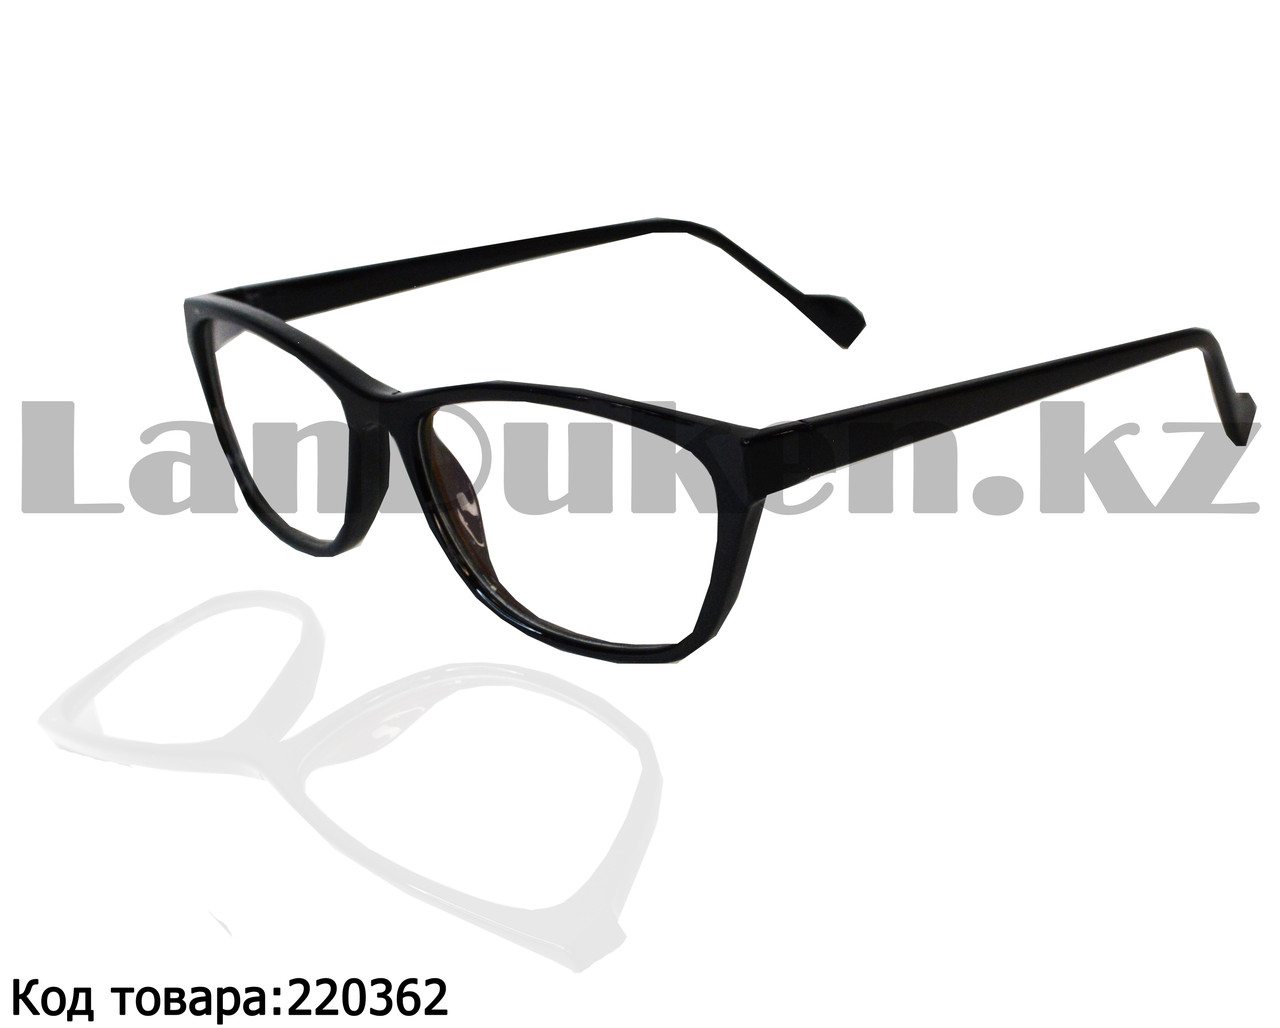 Компьютерные очки с тоненькой душкой узкая оправа глянцевые черные С1, фото 1